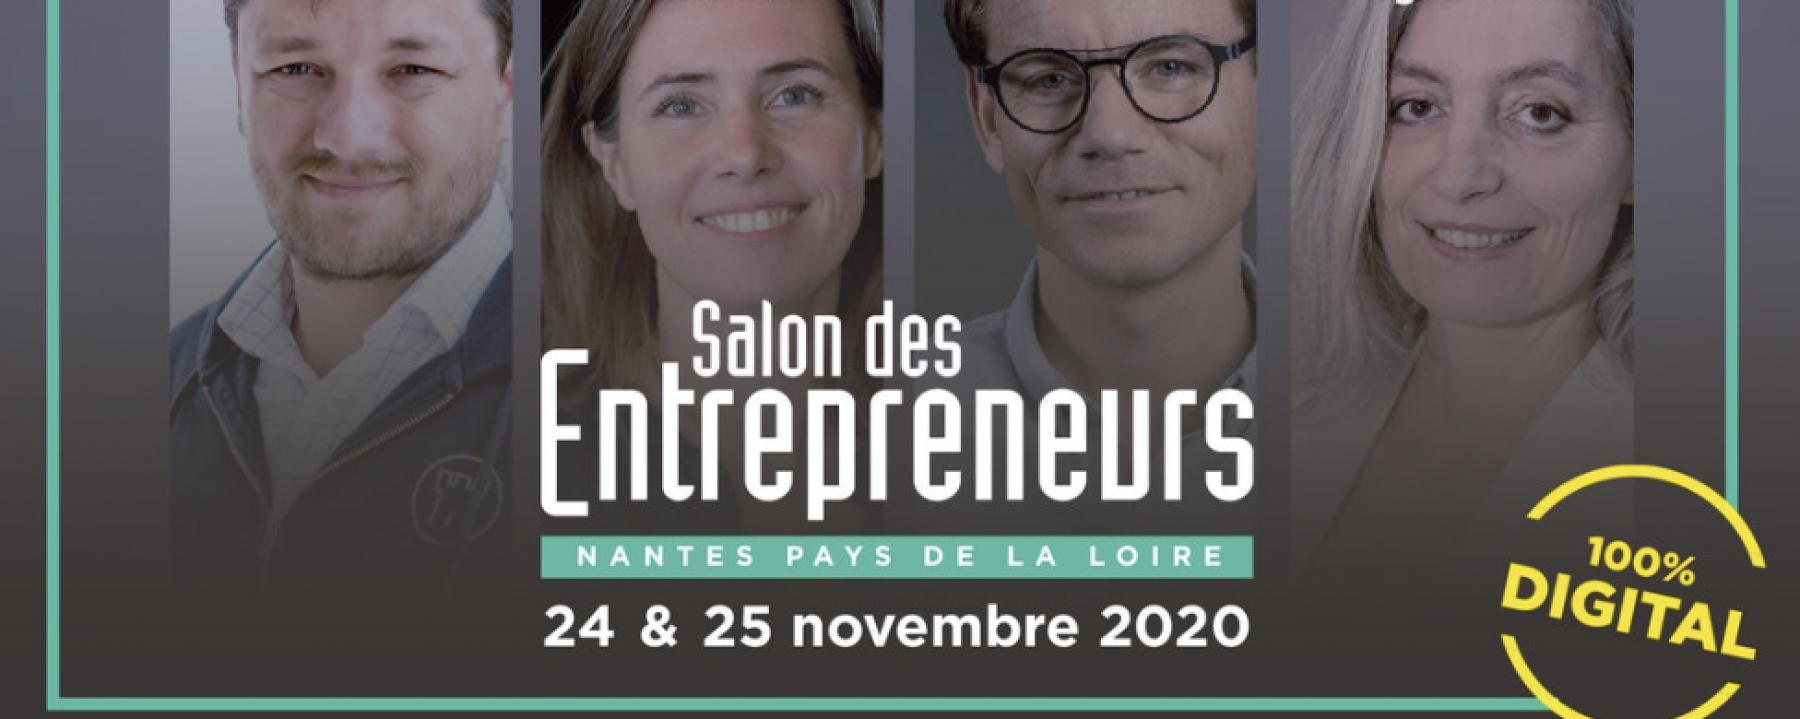 Salon des entrepreneurs, organisé par Les Echos Le Parisien Evénements à Nantes les 24 & 25 Novembre 2020 